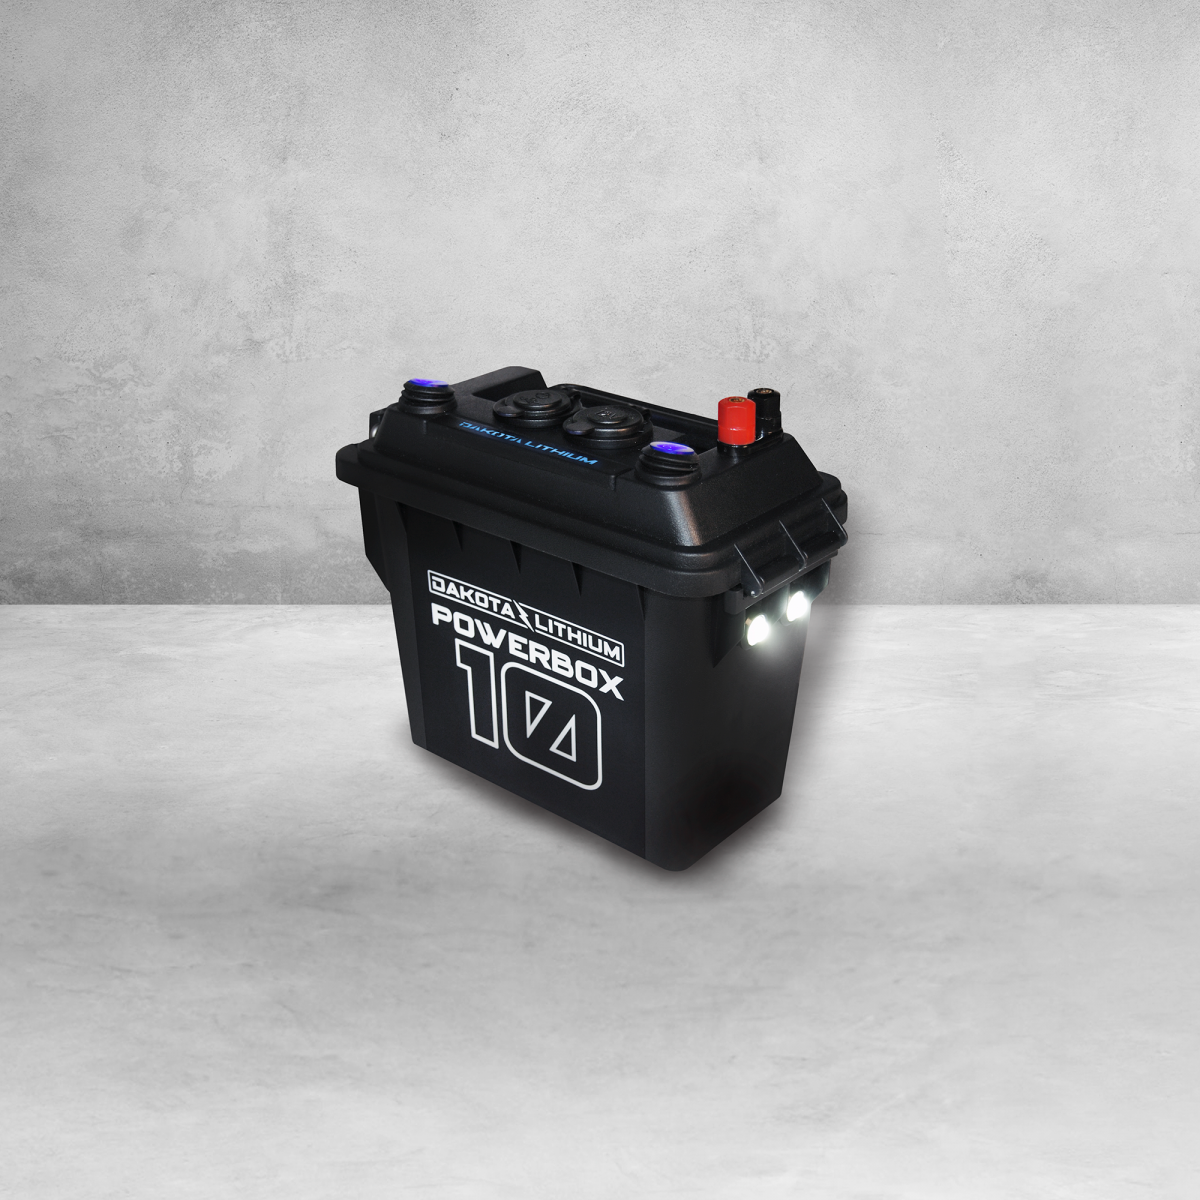 Akkupack PBA 12v 2.0Ah o-b. Lithium Battery Boxes. NINJABATT Power Box. 12v10.30.10. 12v 10ah